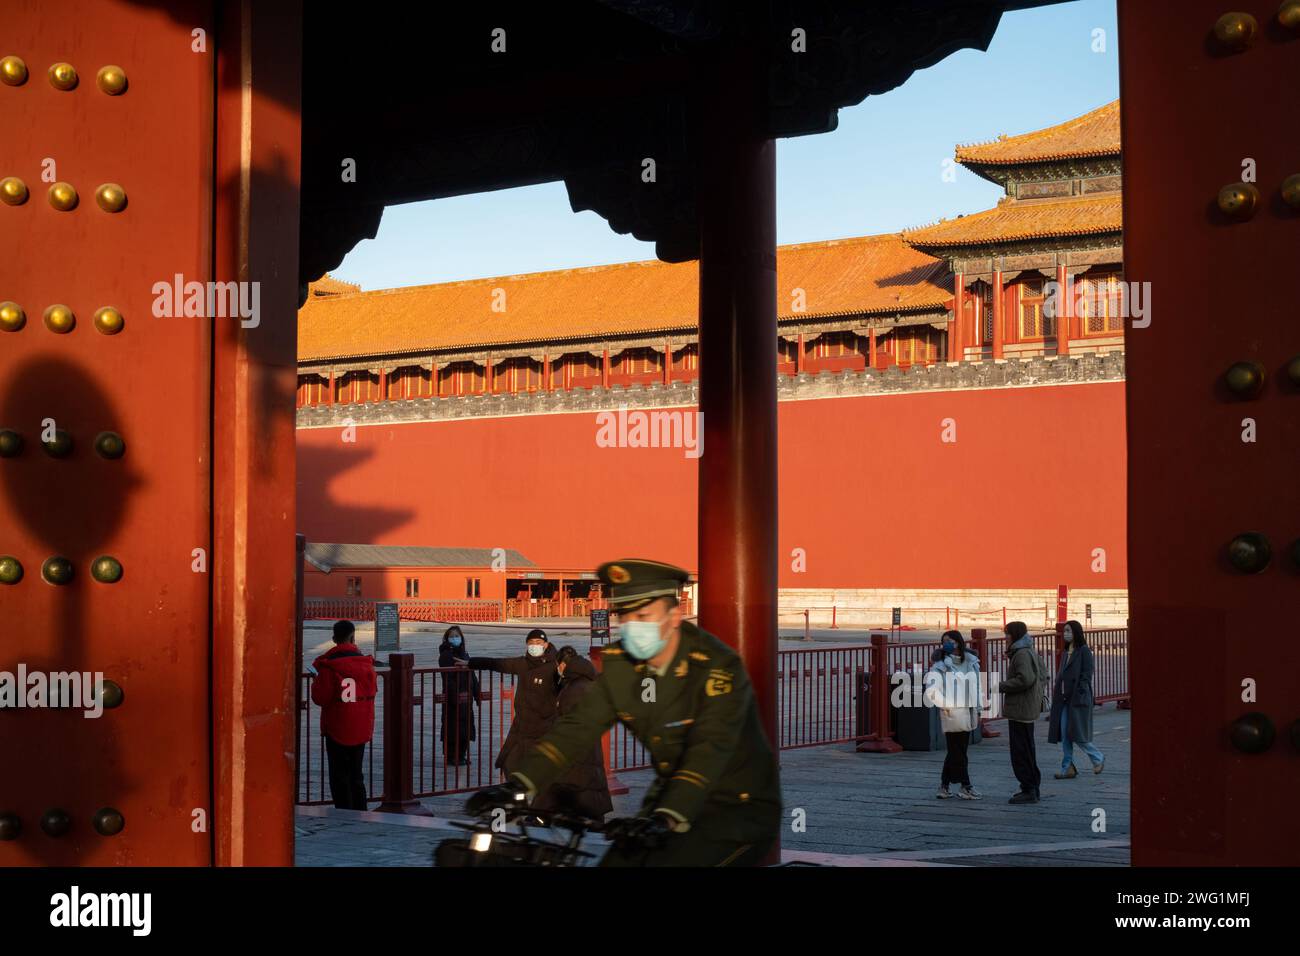 Un soldat de la police armé portant un masque sort d'une porte à vélo dans la Cité interdite à Pékin, en Chine. 02 janvier 2022 Banque D'Images